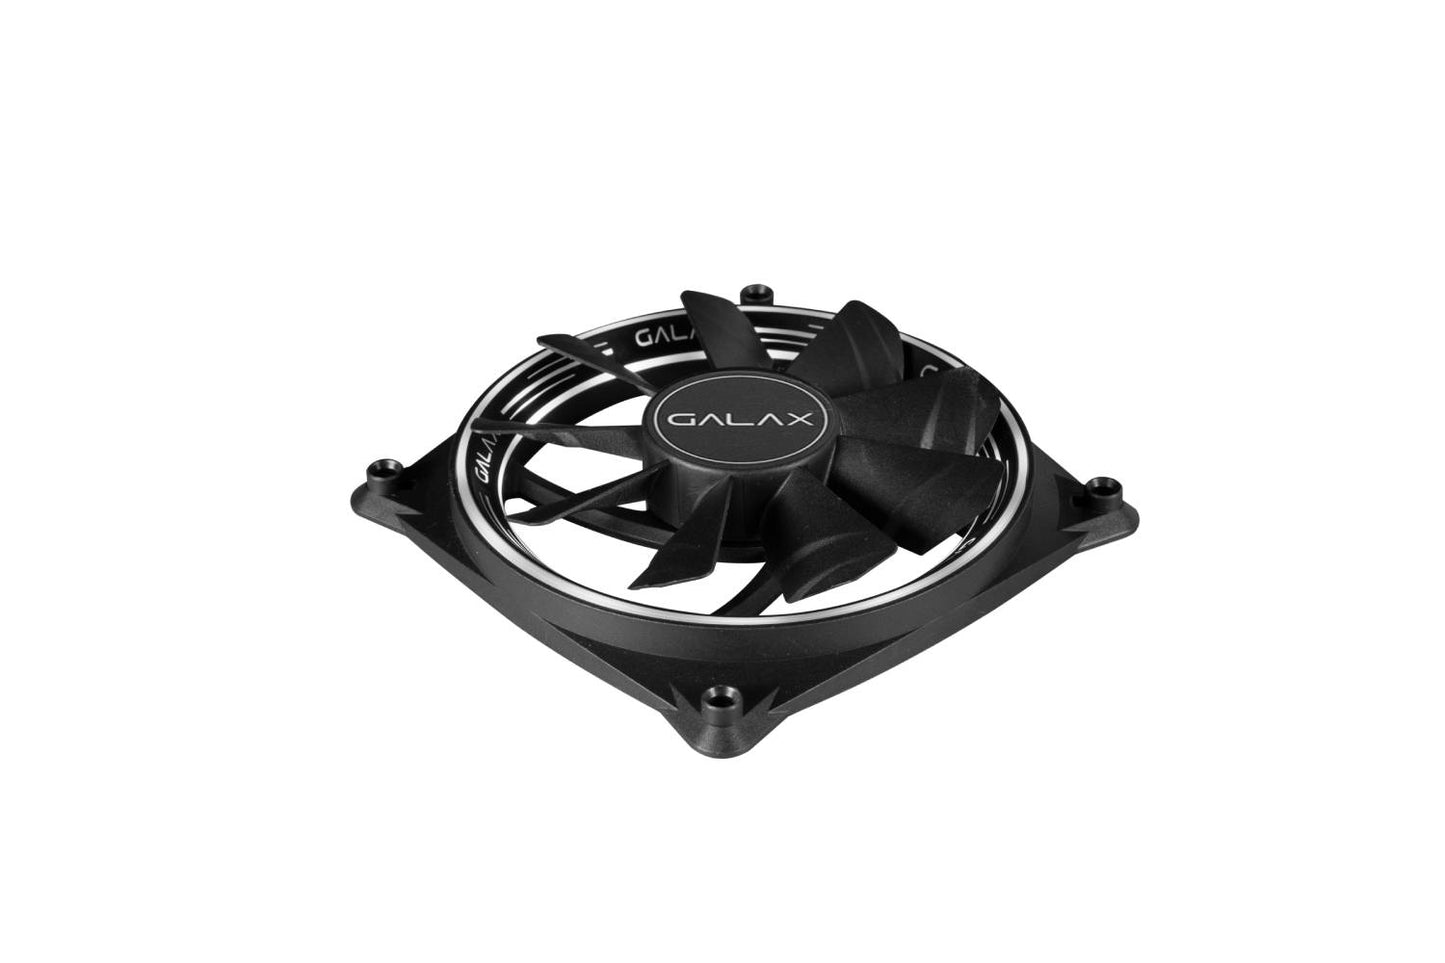 GALAX Casing Fan (VW-02) 120x120x25mm / ARGB